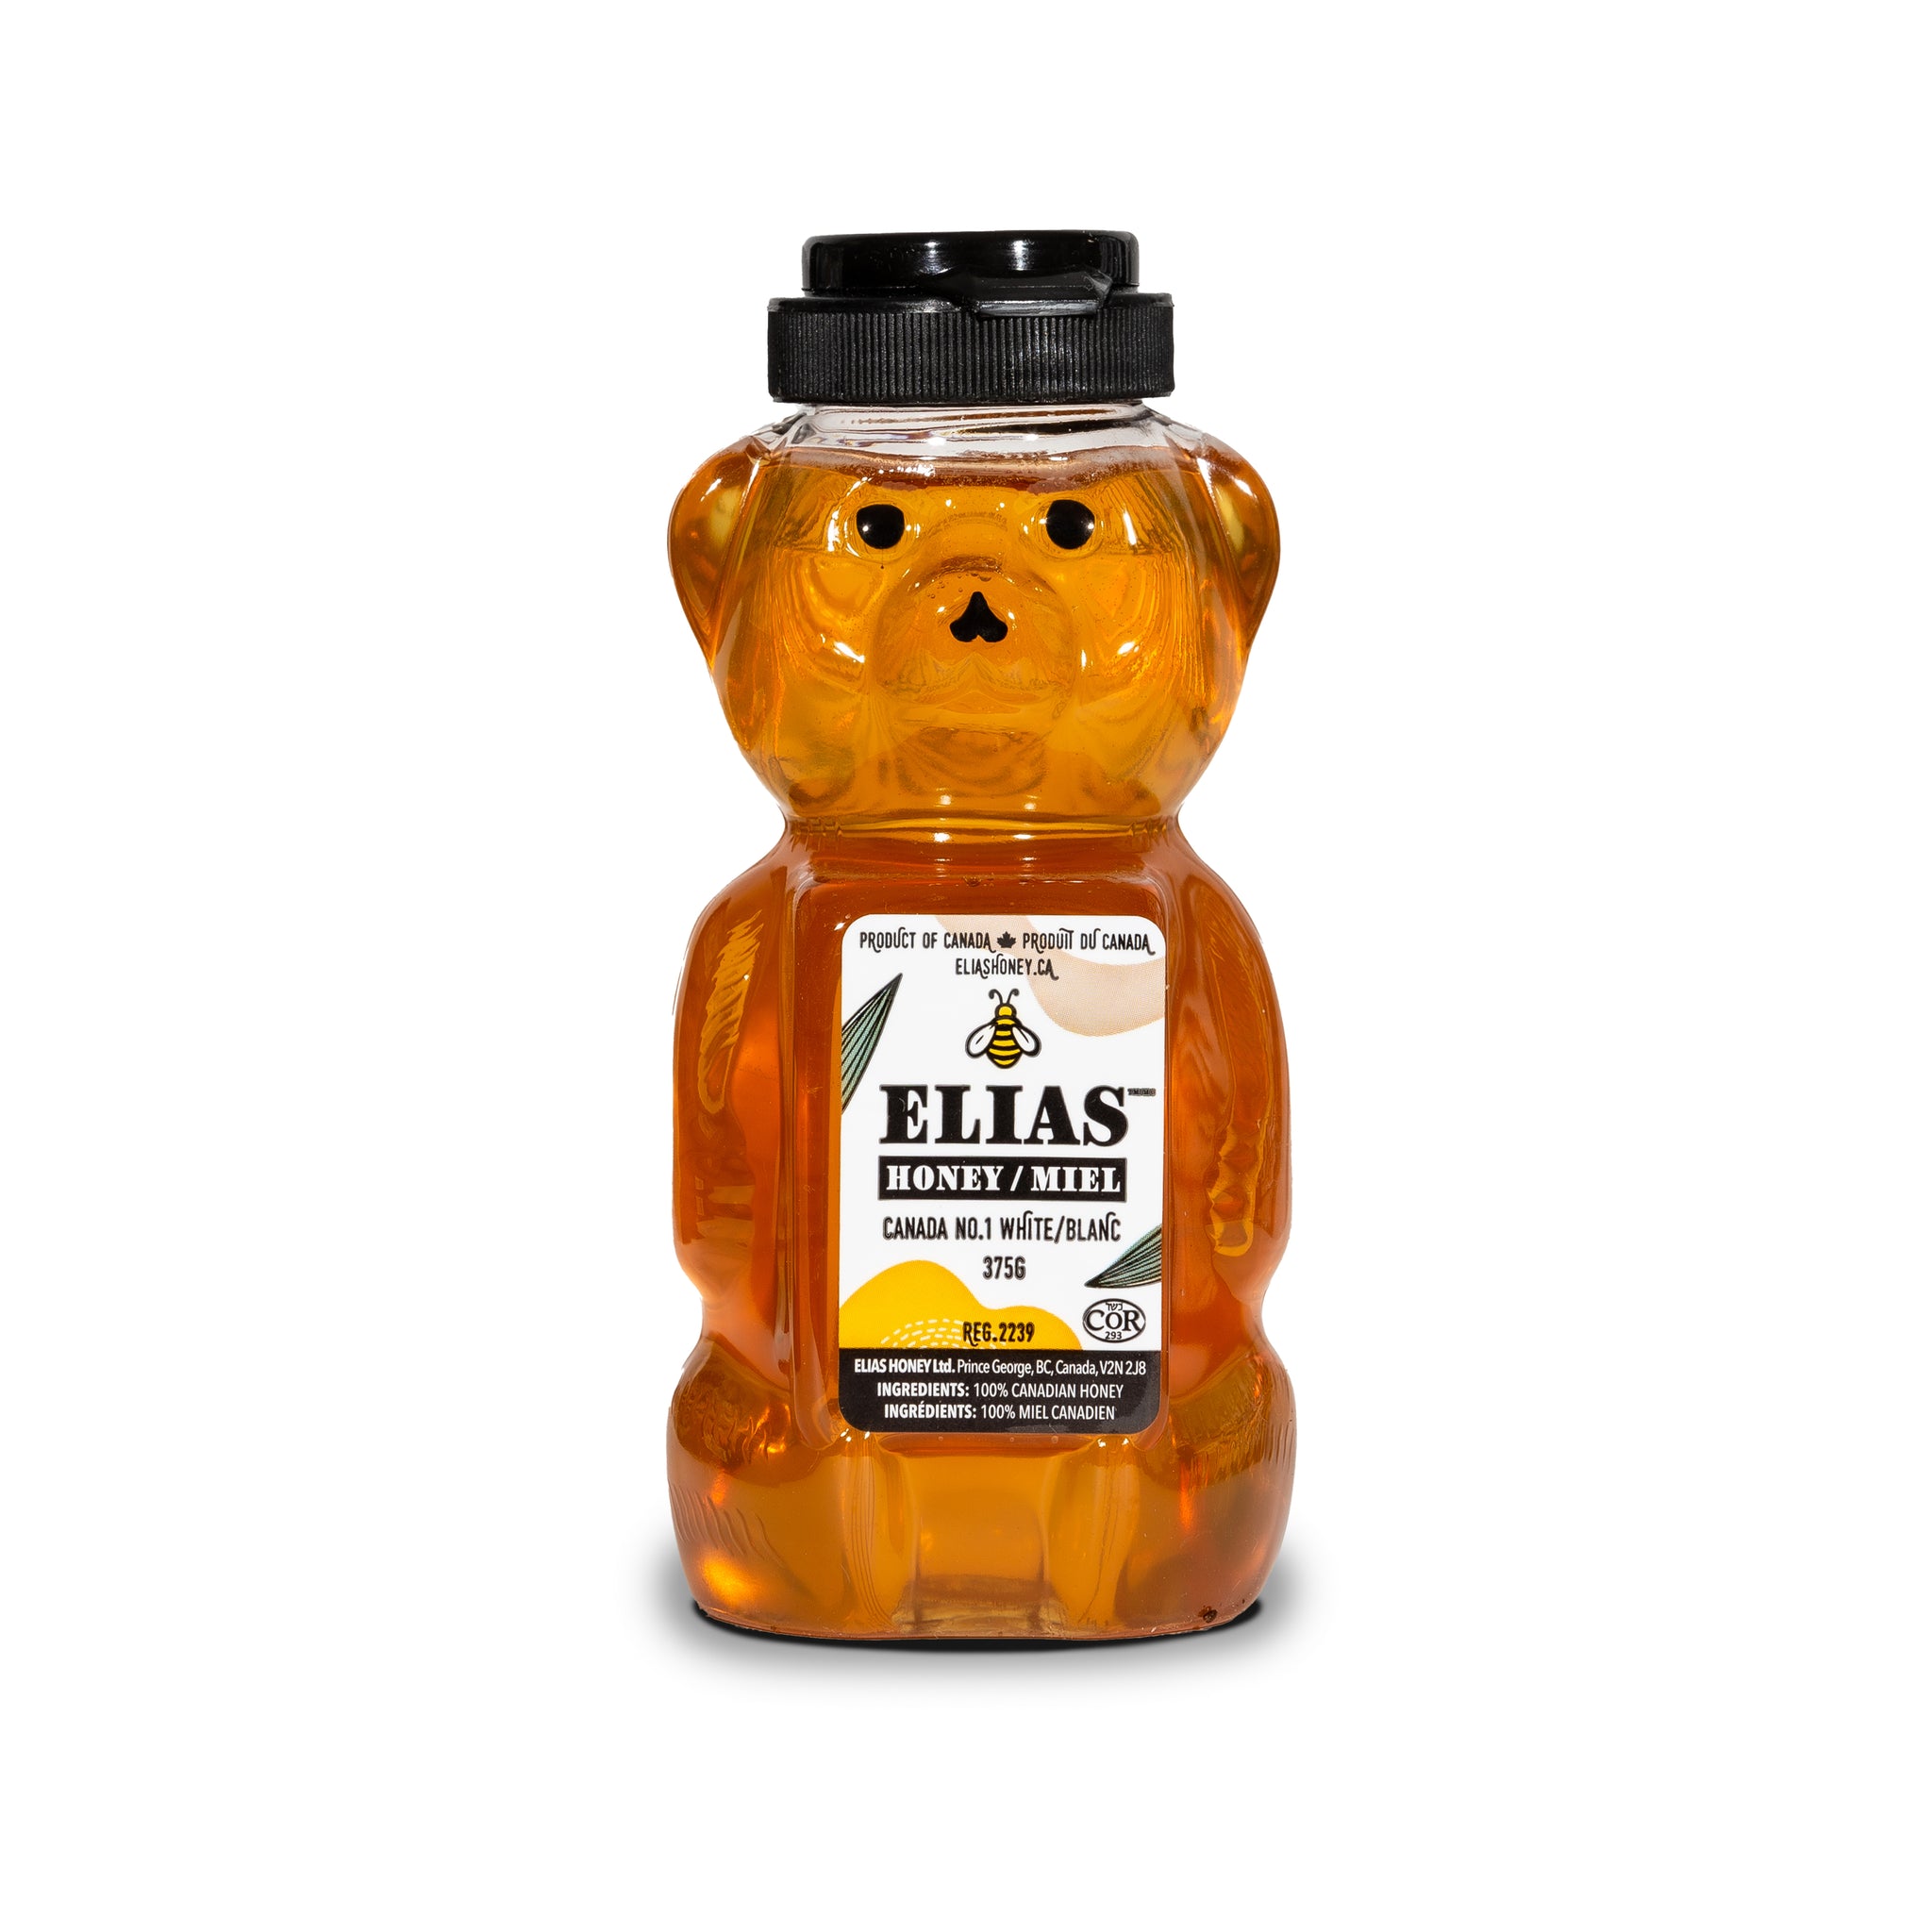 Elias pure liquid honey in honey bear container.